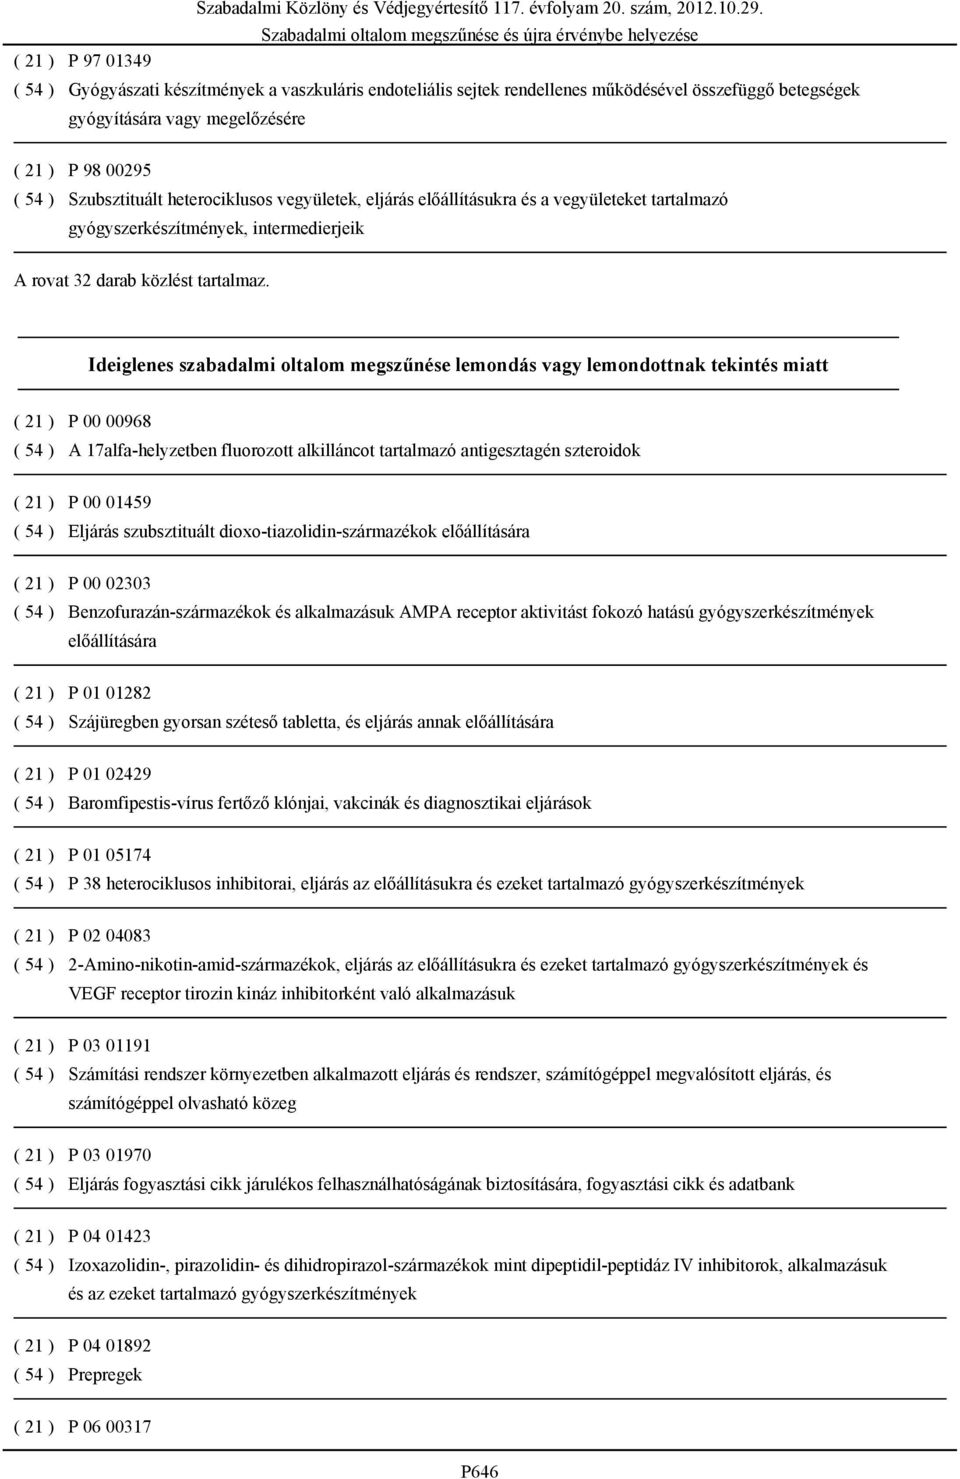 Ideiglenes szabadalmi oltalom megszűnése lemondás vagy lemondottnak tekintés miatt ( 21 ) P 00 00968 ( 54 ) A 17alfa-helyzetben fluorozott alkilláncot tartalmazó antigesztagén szteroidok ( 21 ) P 00